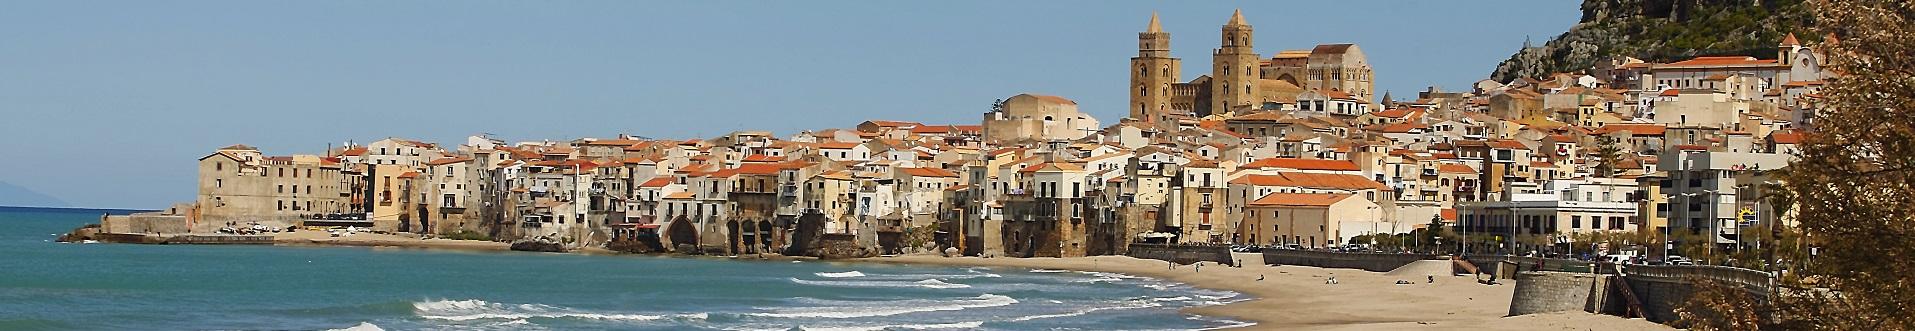 Ville e case vacanze in Sicilia vicino Cefalù.